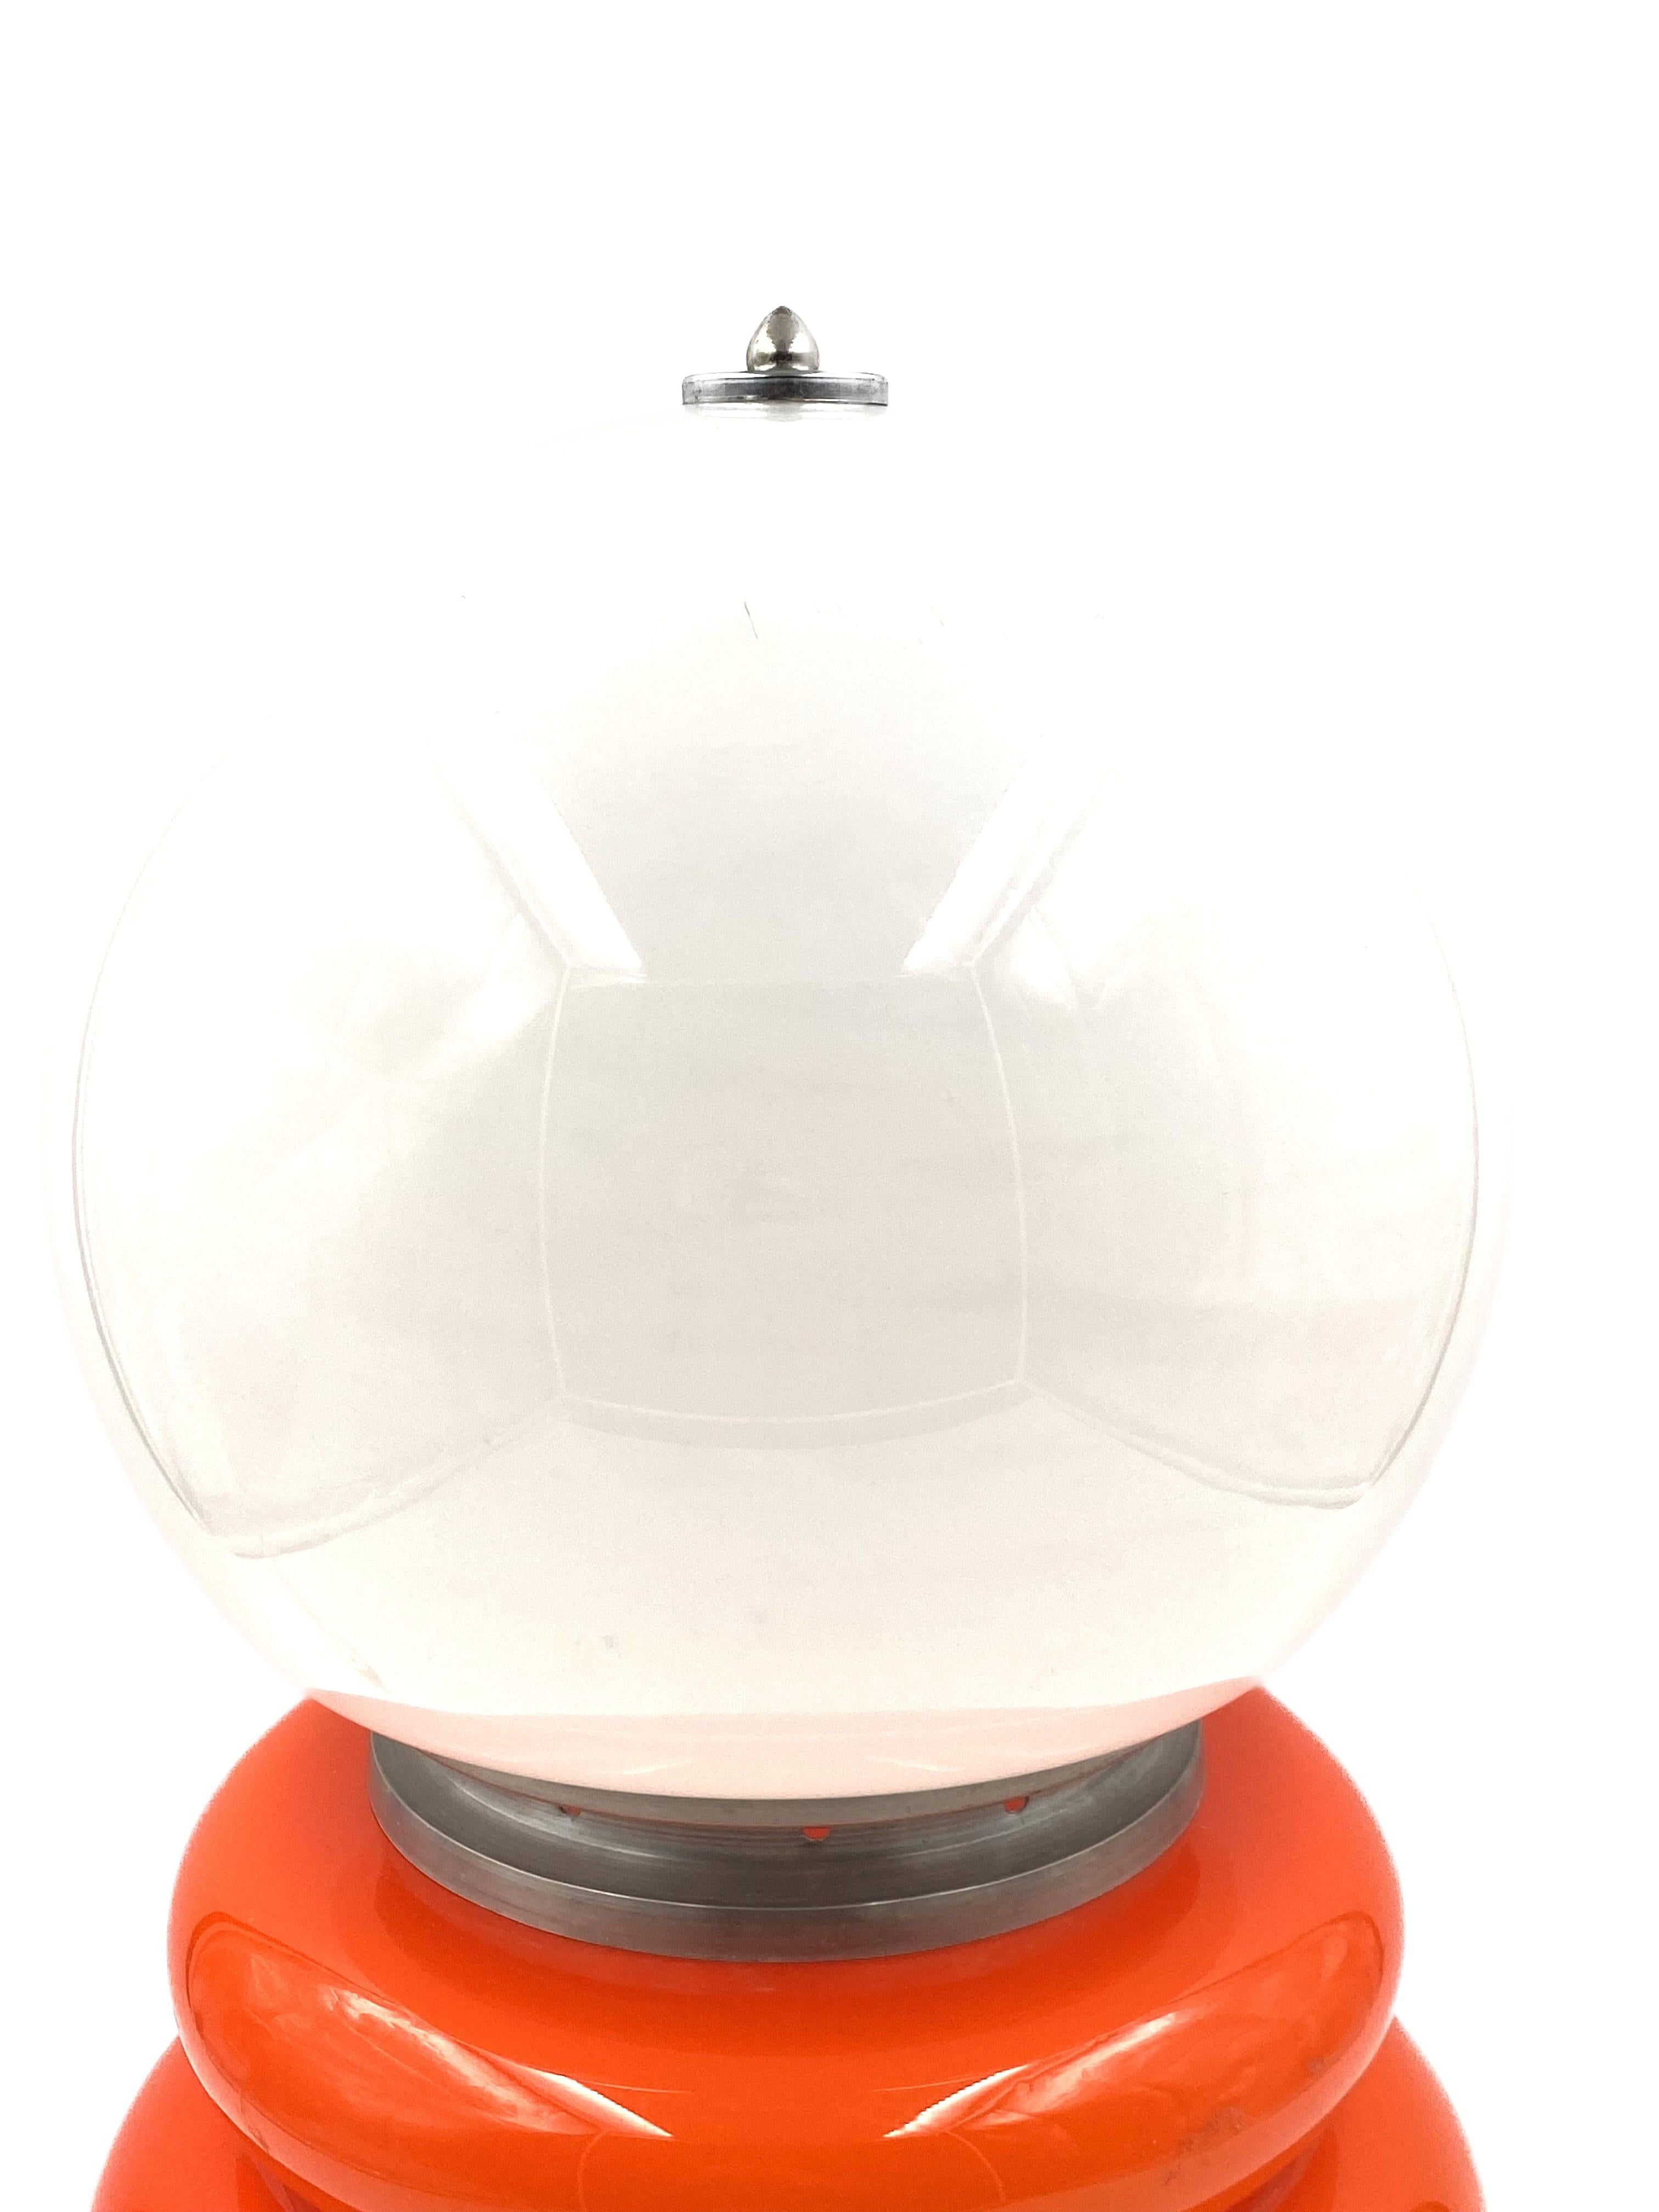 Carlo Nason, Space Age Orange Murano Glass Table Lamp, Av Mazzega, 1970s 8